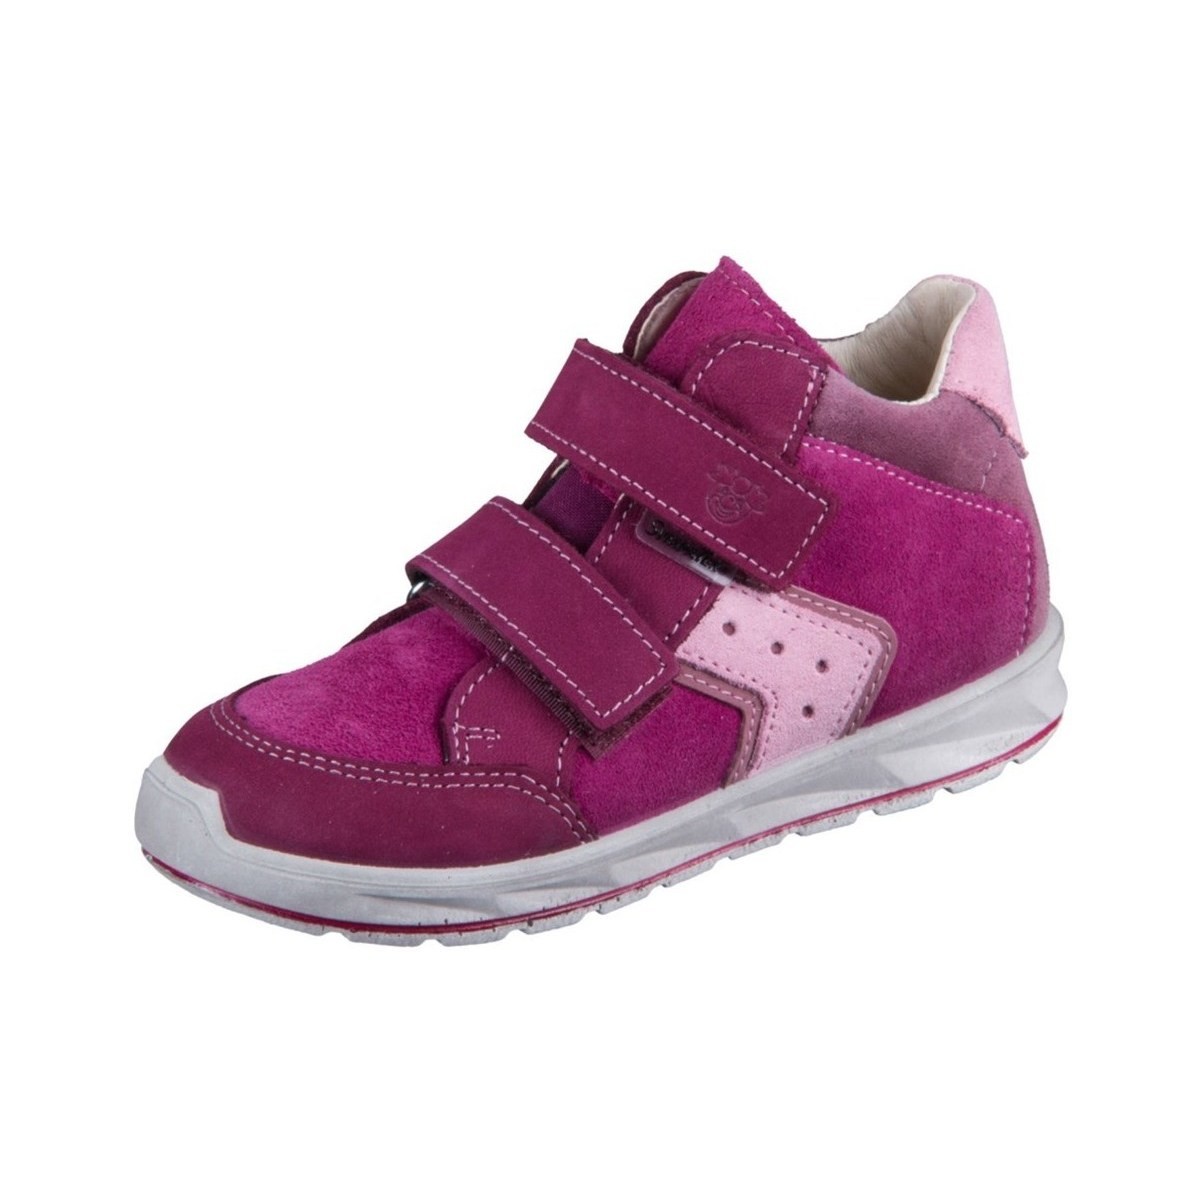 Schuhe Kinder Boots Ricosta Kimo Violett